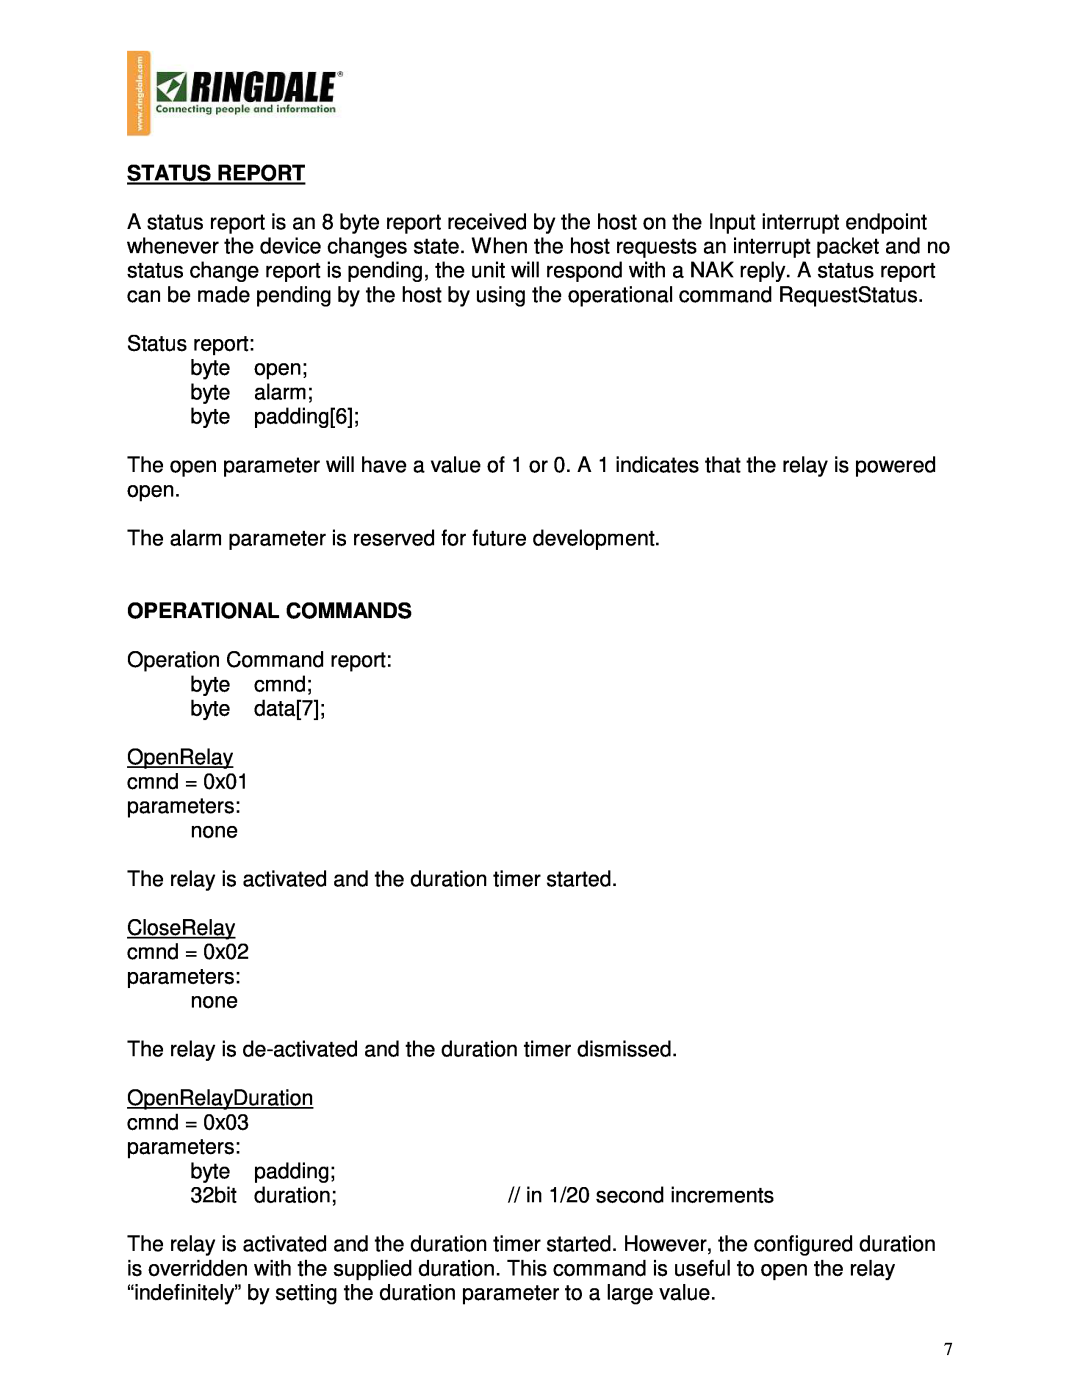 Ringdale 1543 manual Status Report, Operational Commands 